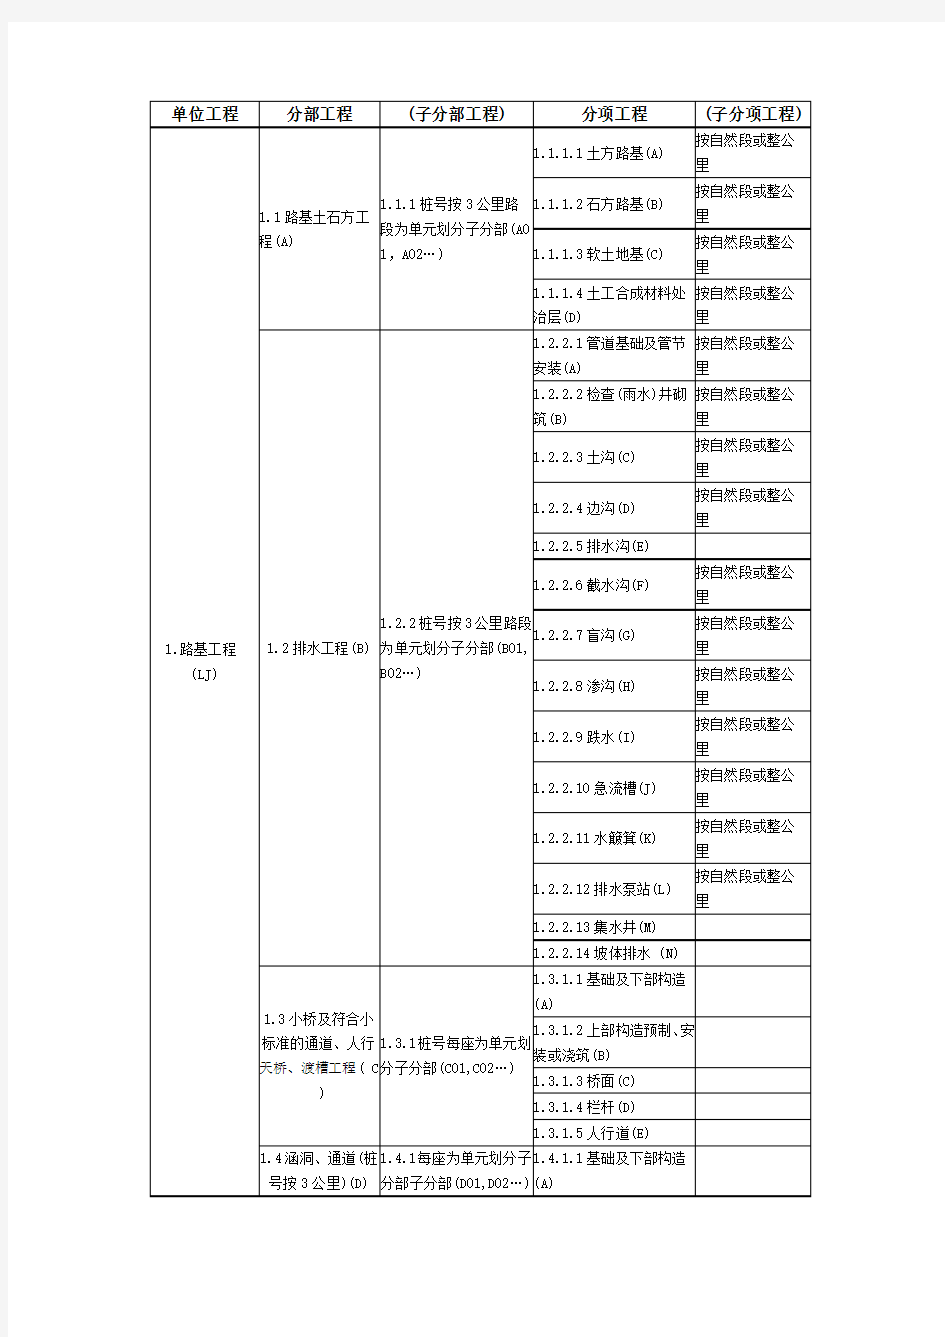 公路单位分部分项划分(最全)